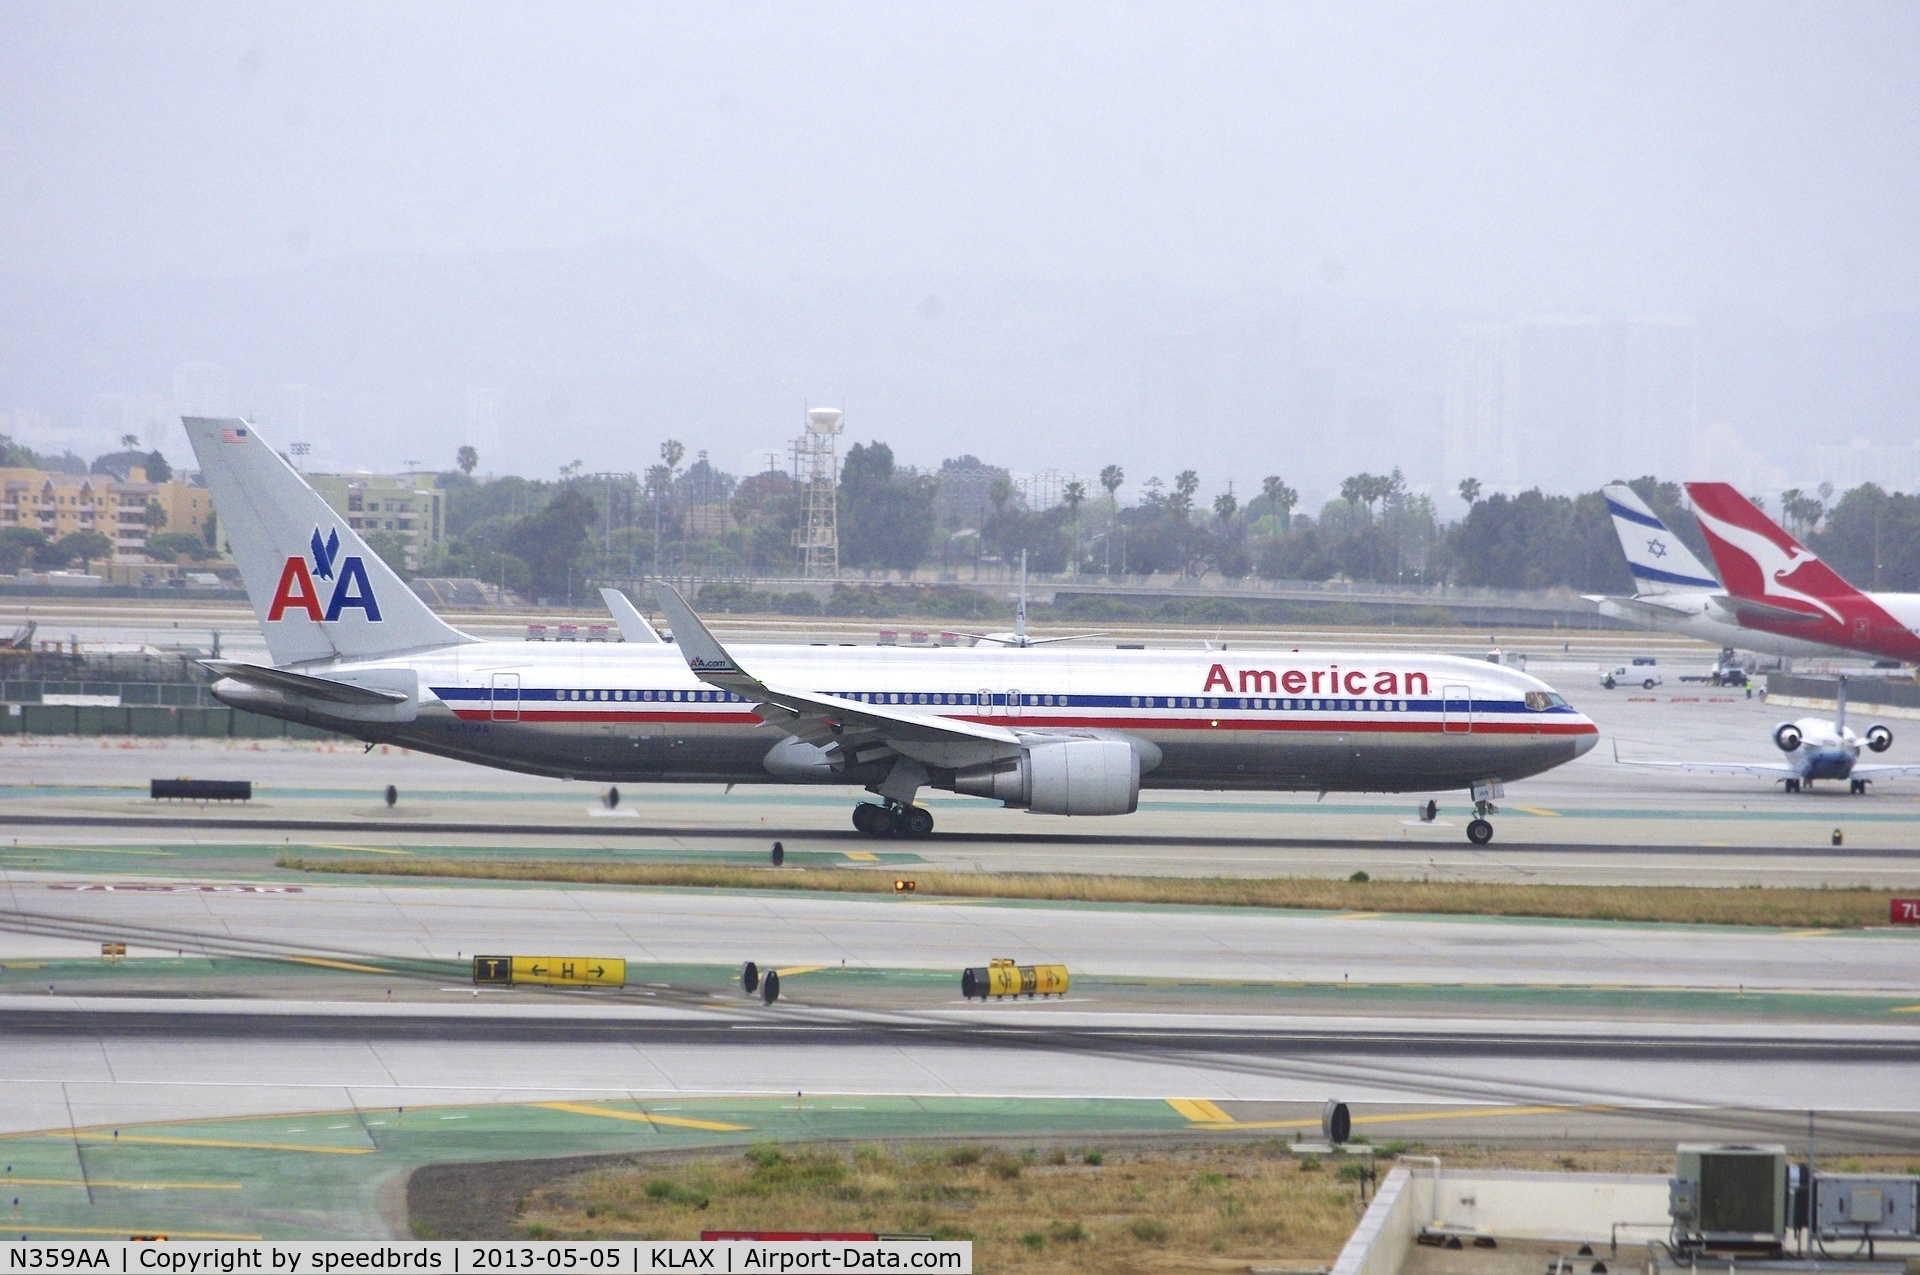 N359AA, 1988 Boeing 767-323 C/N 24040, American Airlines 767-300 w/ winglets